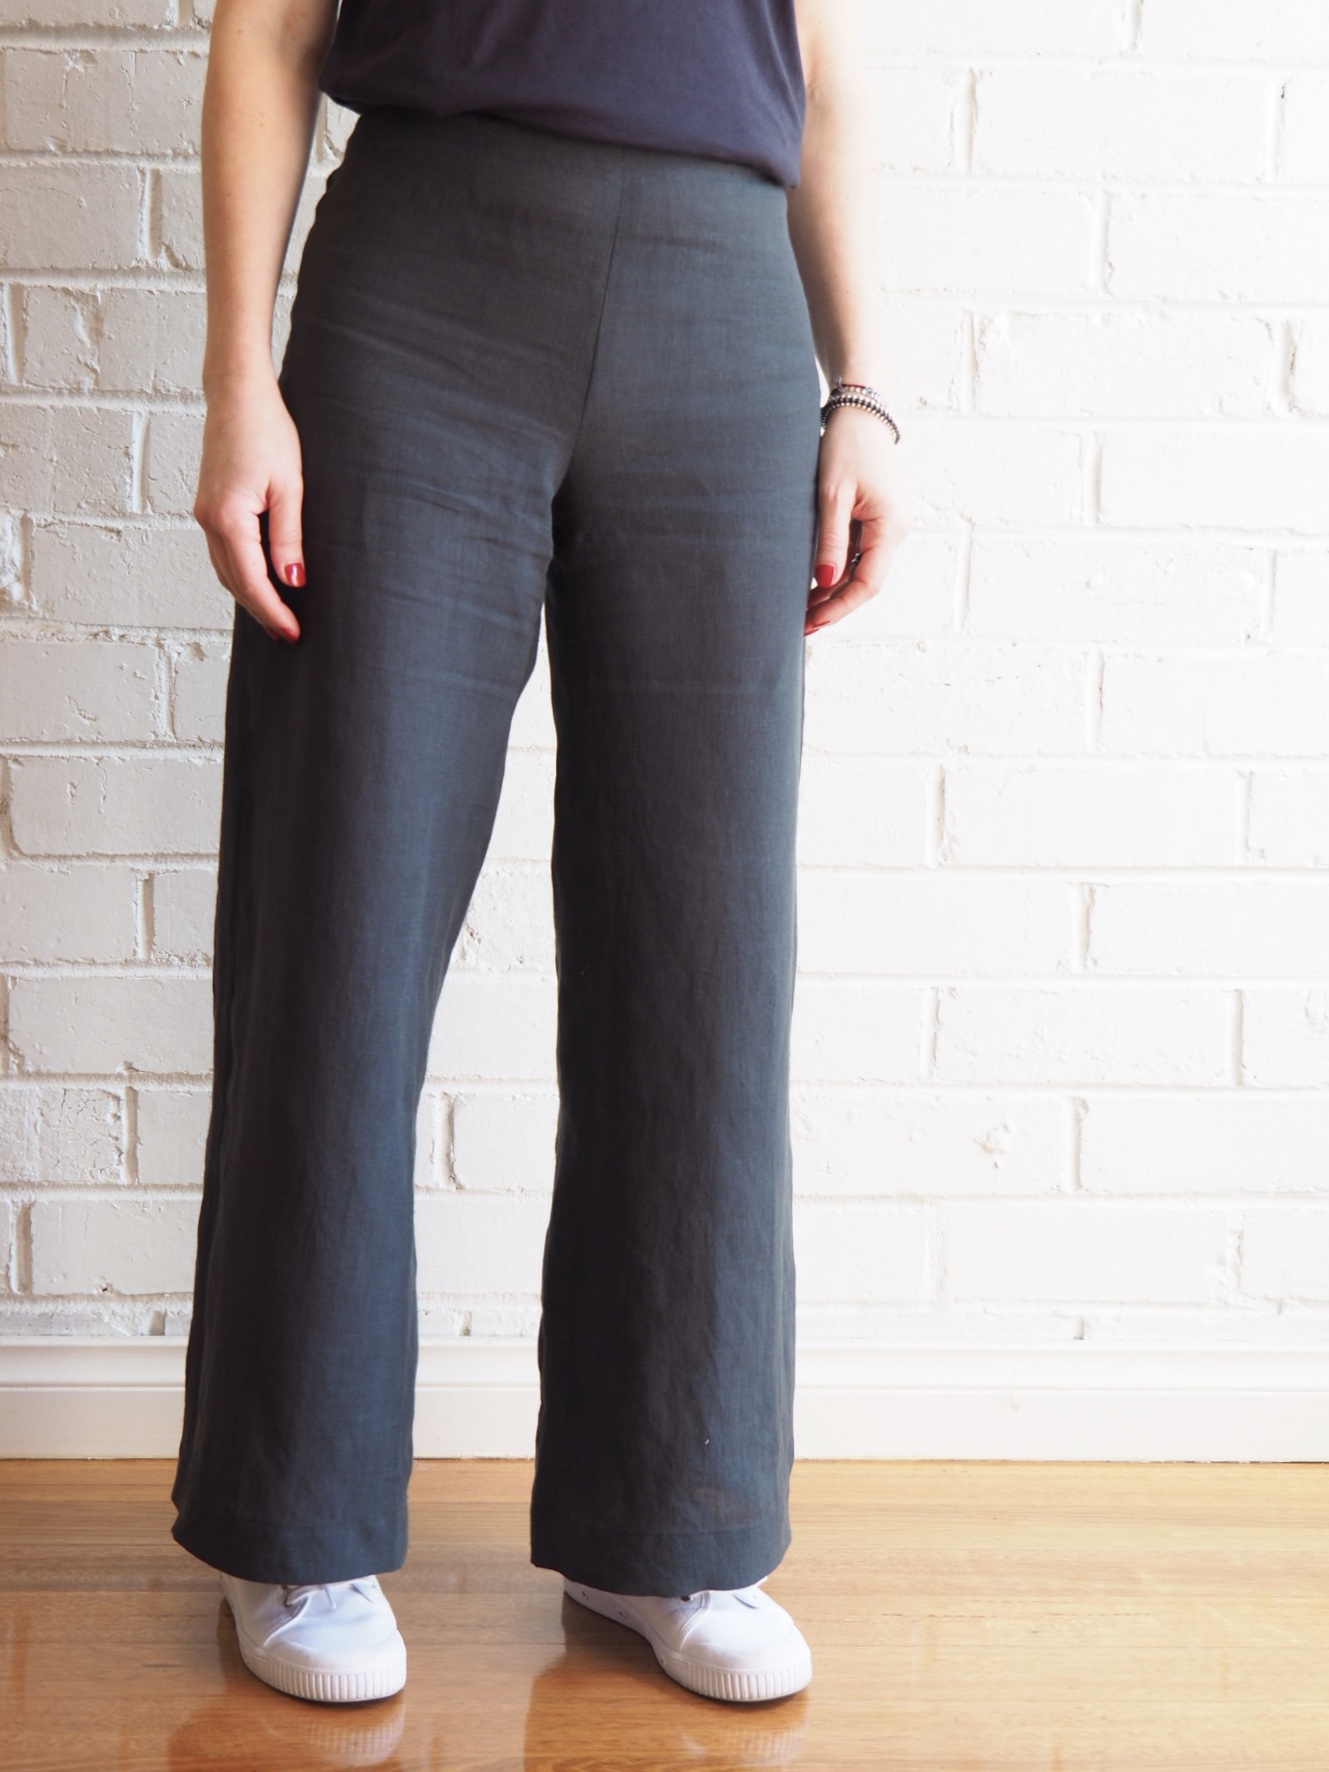 Meet our NEW Chiara Pants Pattern - Sew Tessuti Blog